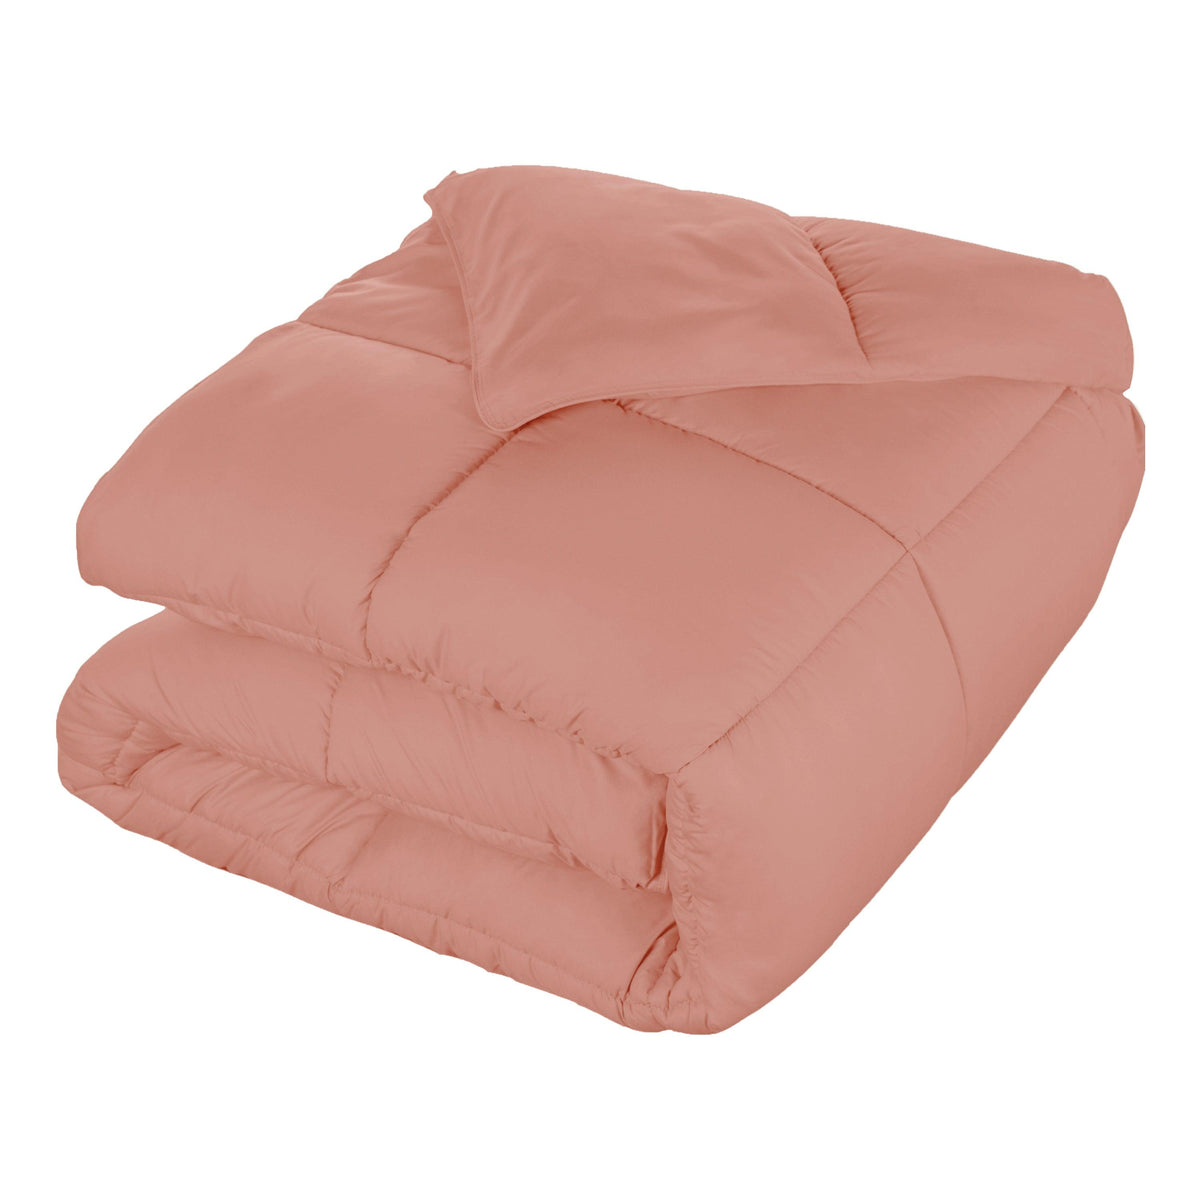  Superior Solid All Season Down Alternative Microfiber Comforter - Blush